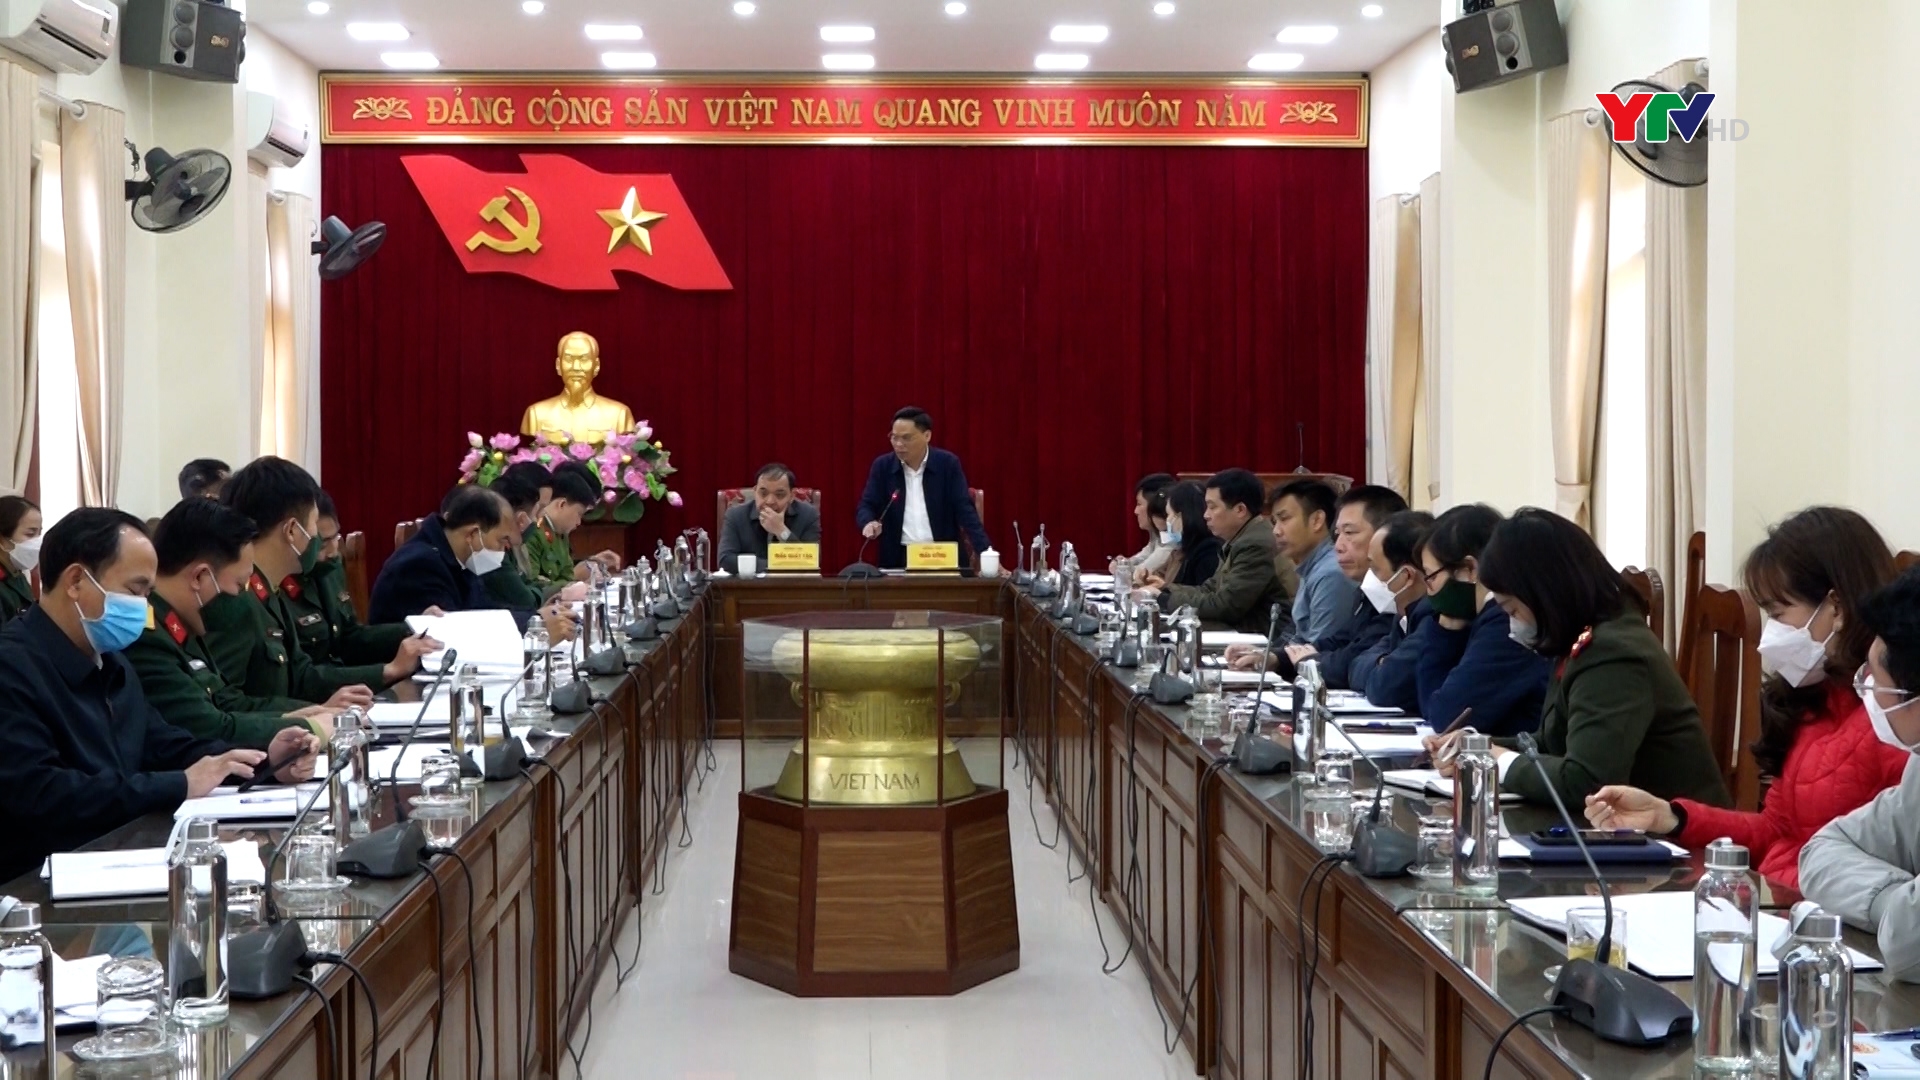 Hội đồng Nghĩa vụ quân sự huyện Trấn Yên triển khai kế hoạch giao nhận quân năm 2022